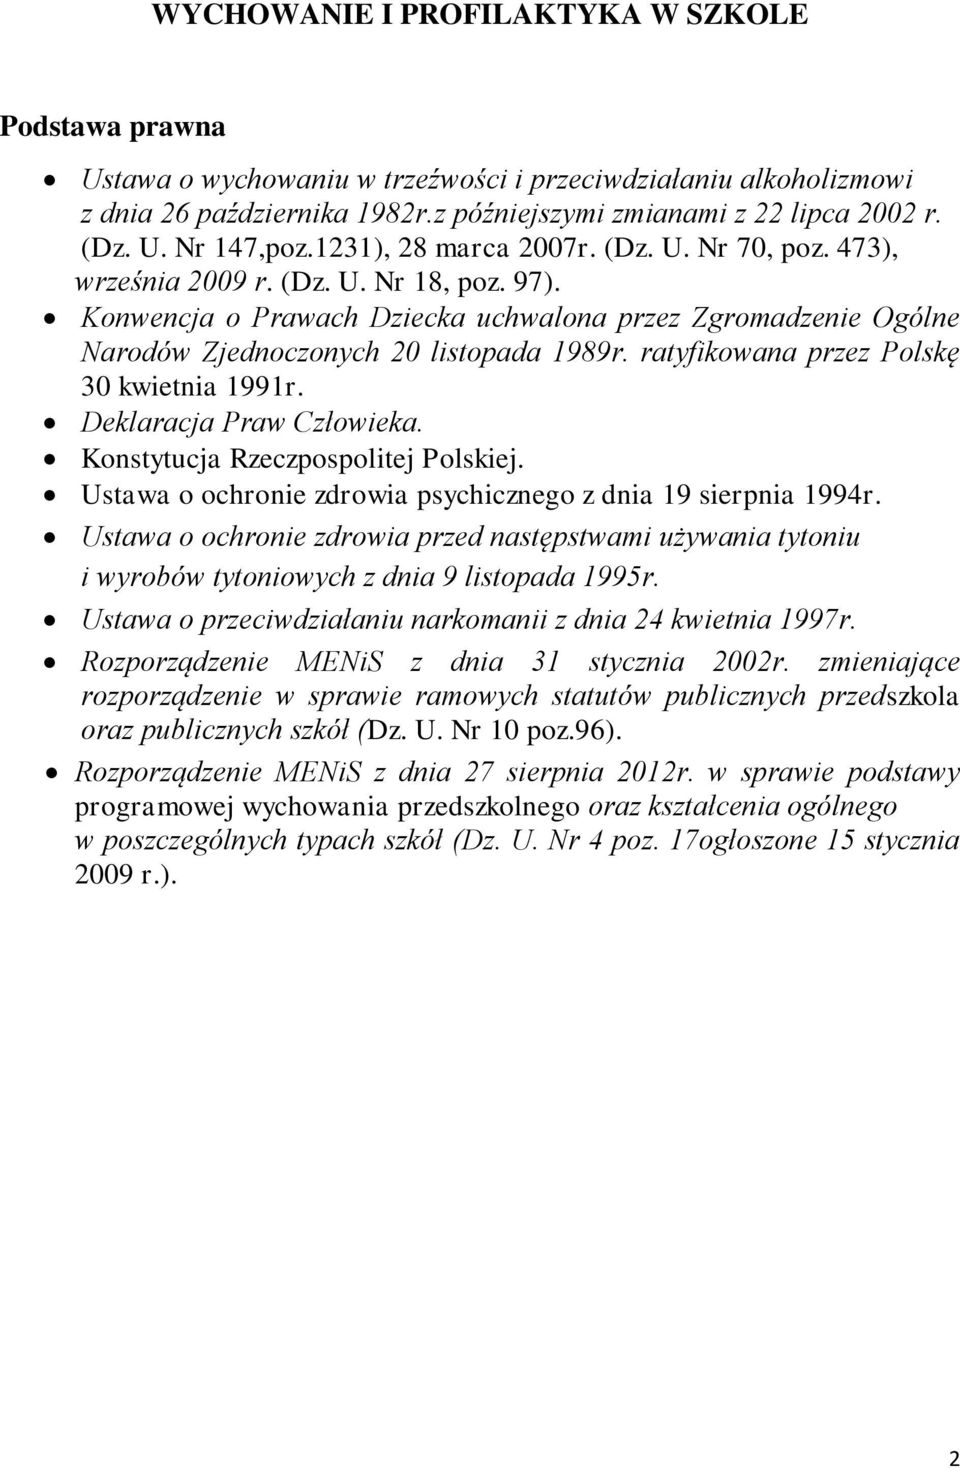 ratyfikowana przez Polskę 30 kwietnia 1991r. Deklaracja Praw Człowieka. Konstytucja Rzeczpospolitej Polskiej. Ustawa o ochronie zdrowia psychicznego z dnia 19 sierpnia 1994r.